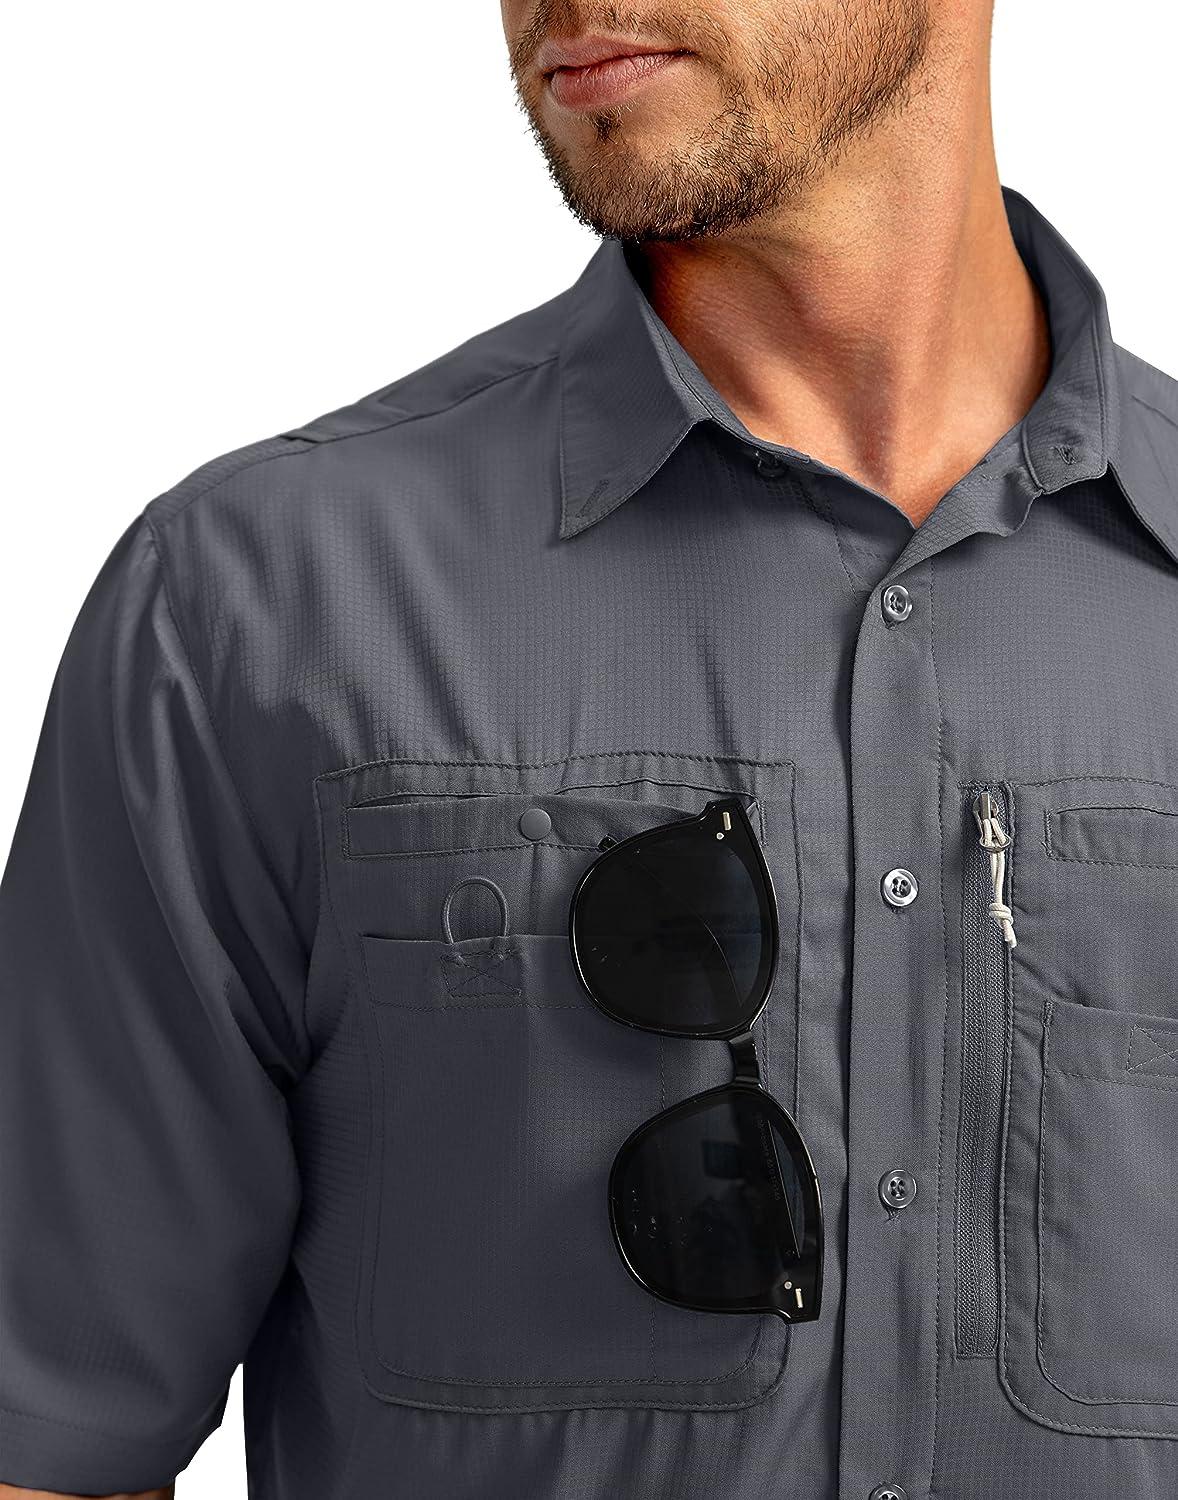 NECHOLOGY Men's Casual Button-Down Shirts Fishing Shirts Men's Big